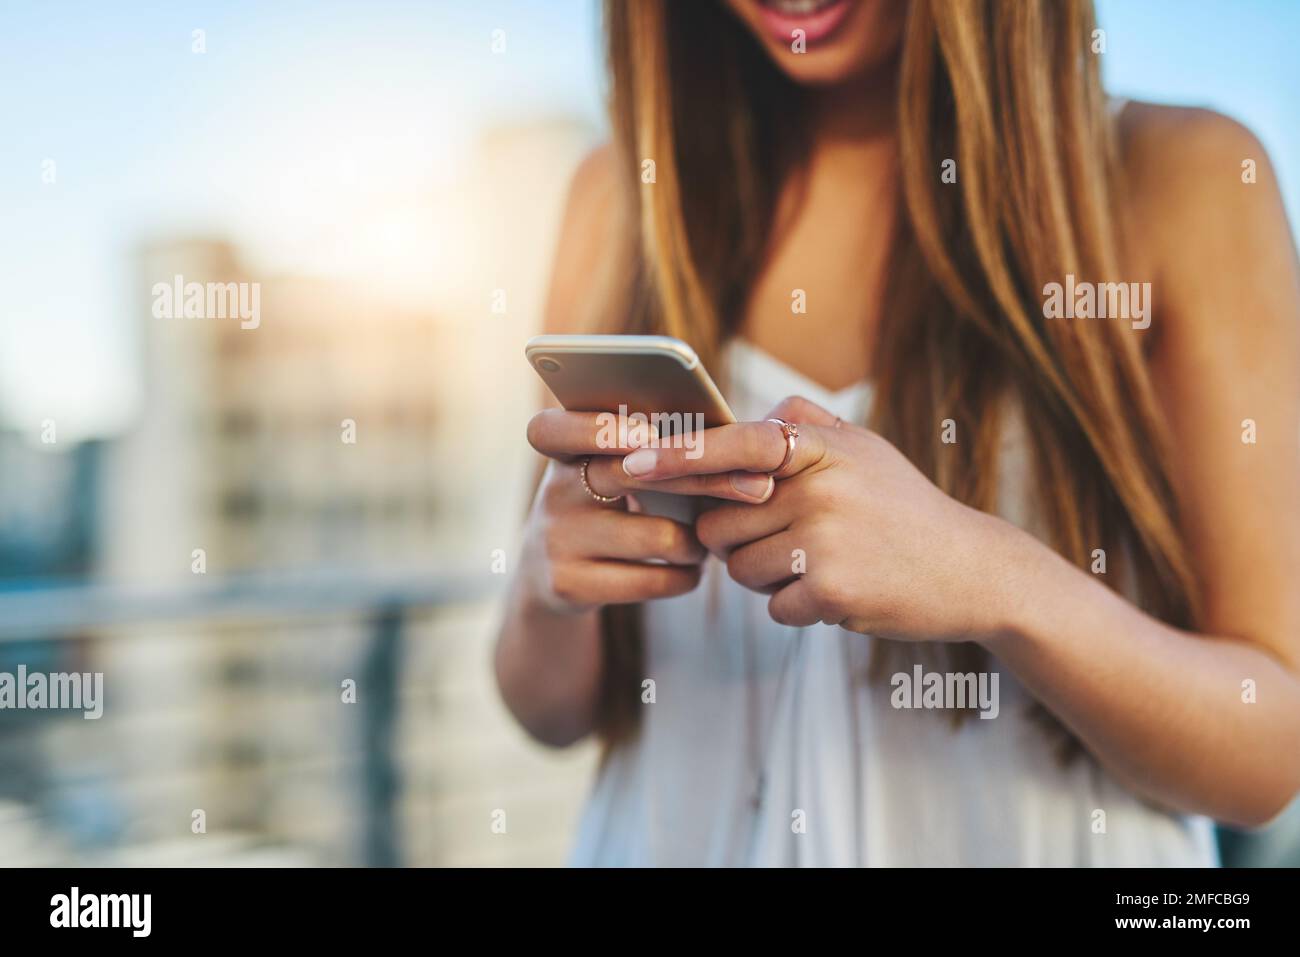 Shes toujours en ligne. une jeune femme méconnaissable envoie un message texte en se tenant debout à l'extérieur. Banque D'Images